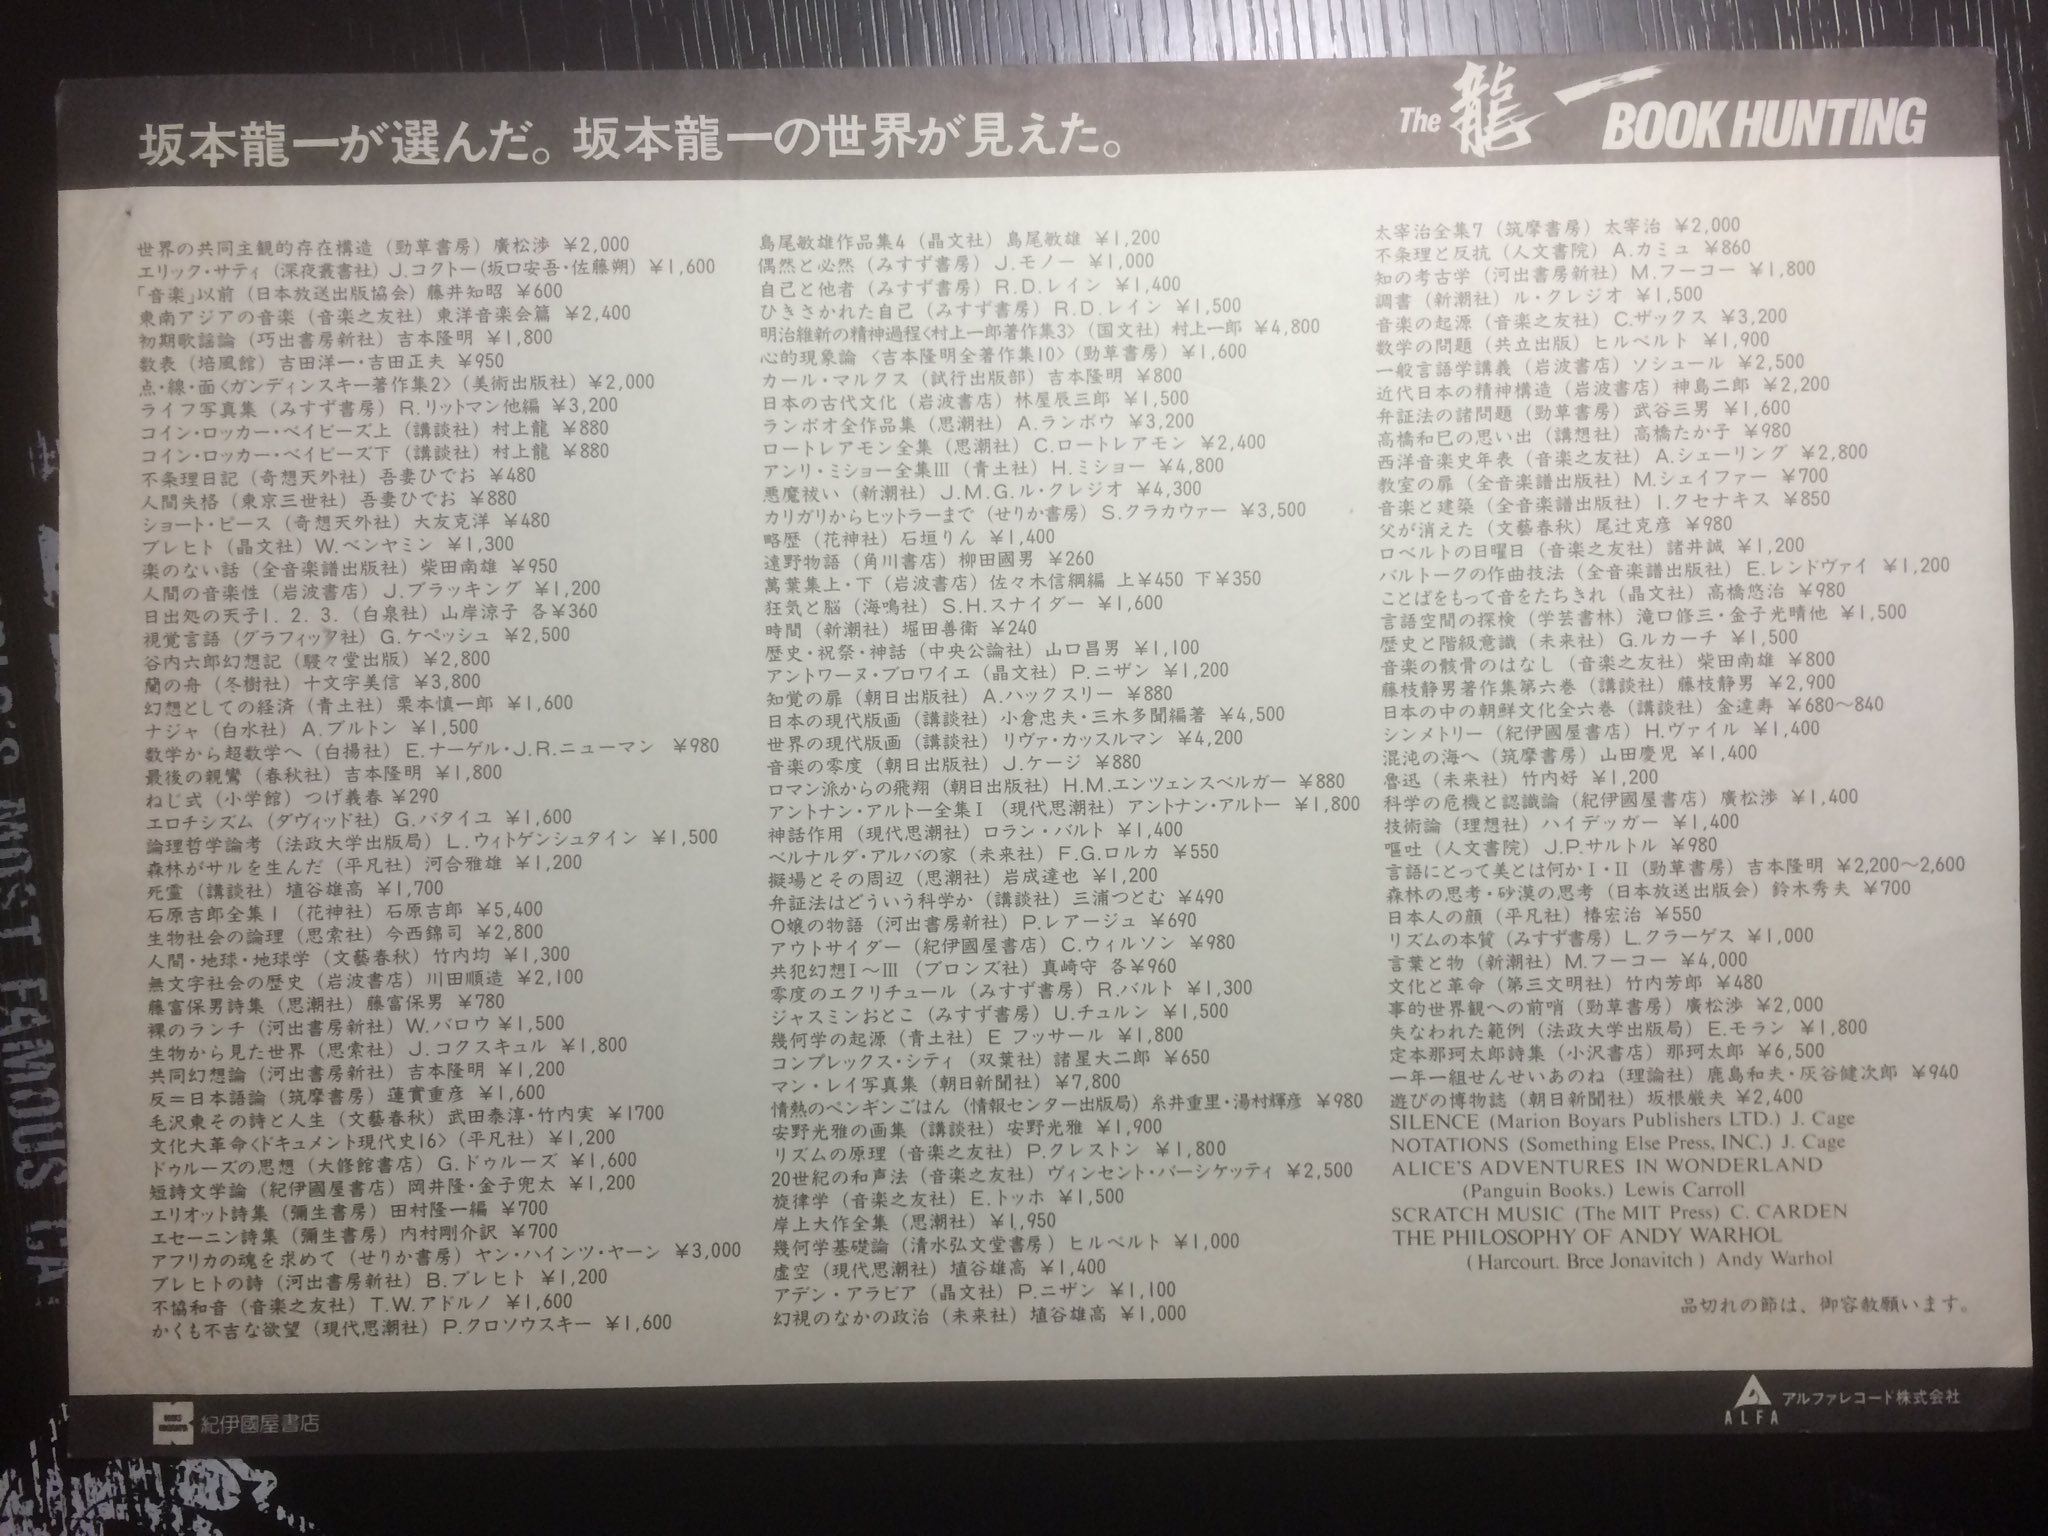 1981年に坂本龍一が選んだ140冊の本 | 四畳半文庫